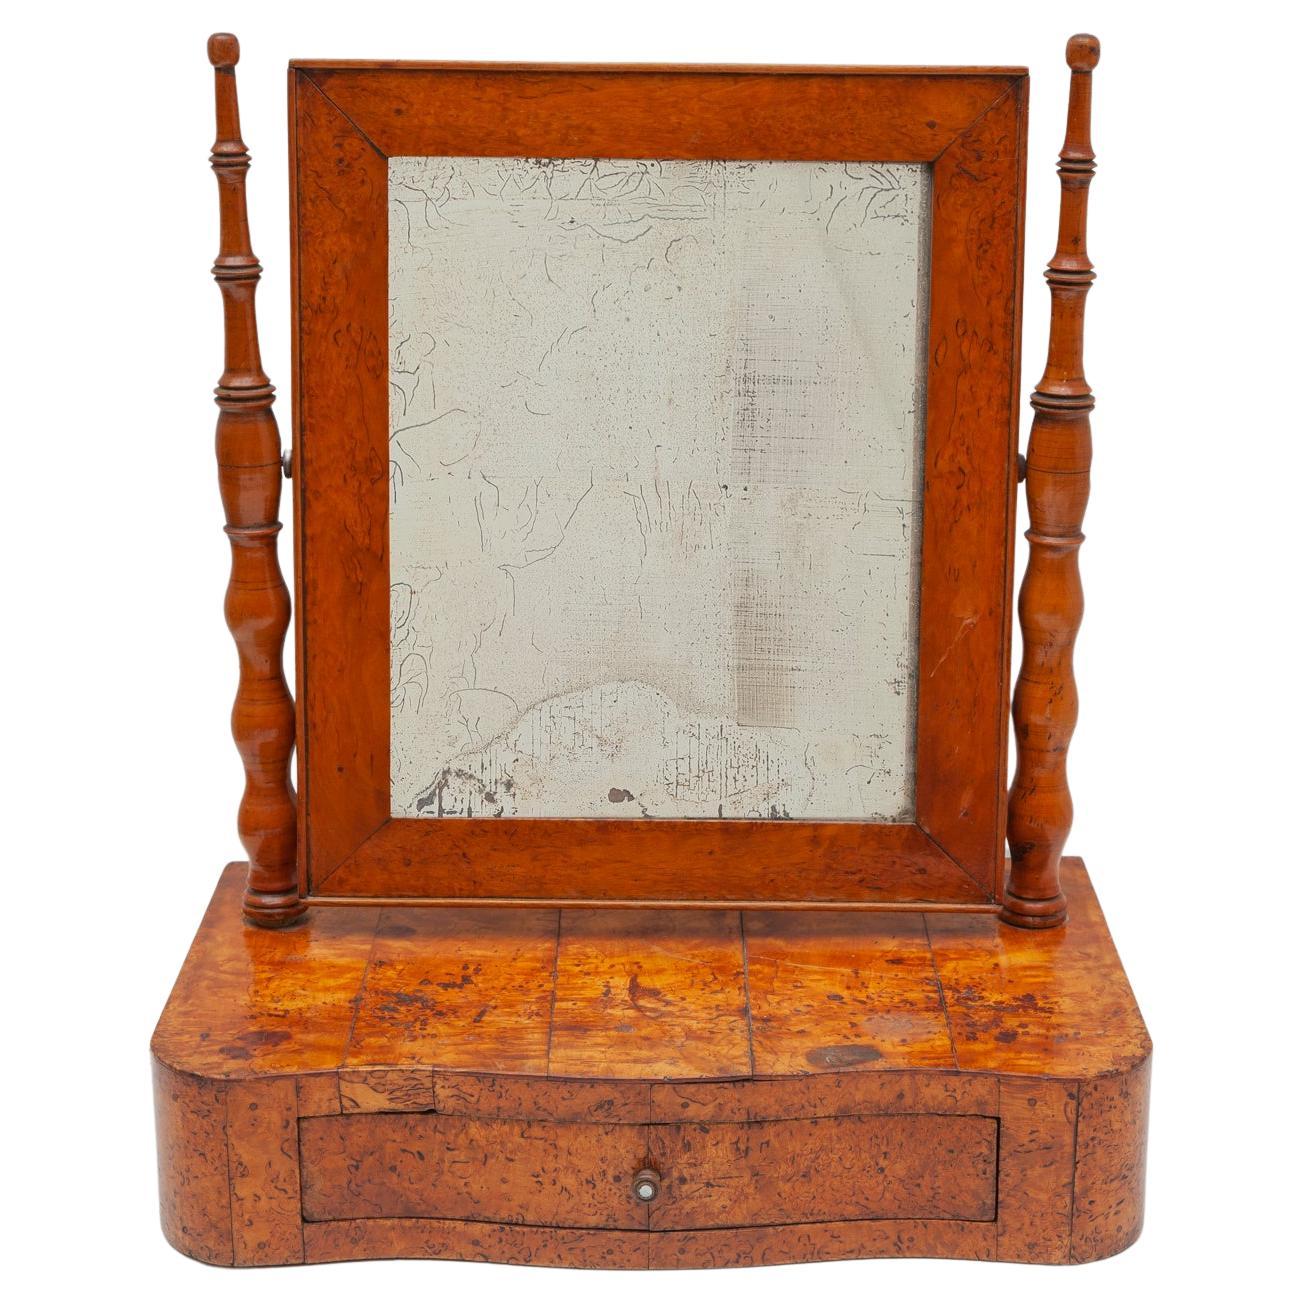 Antique Biedermeier Vanity Table Mirror in Burlwood, 19th Century, Germany